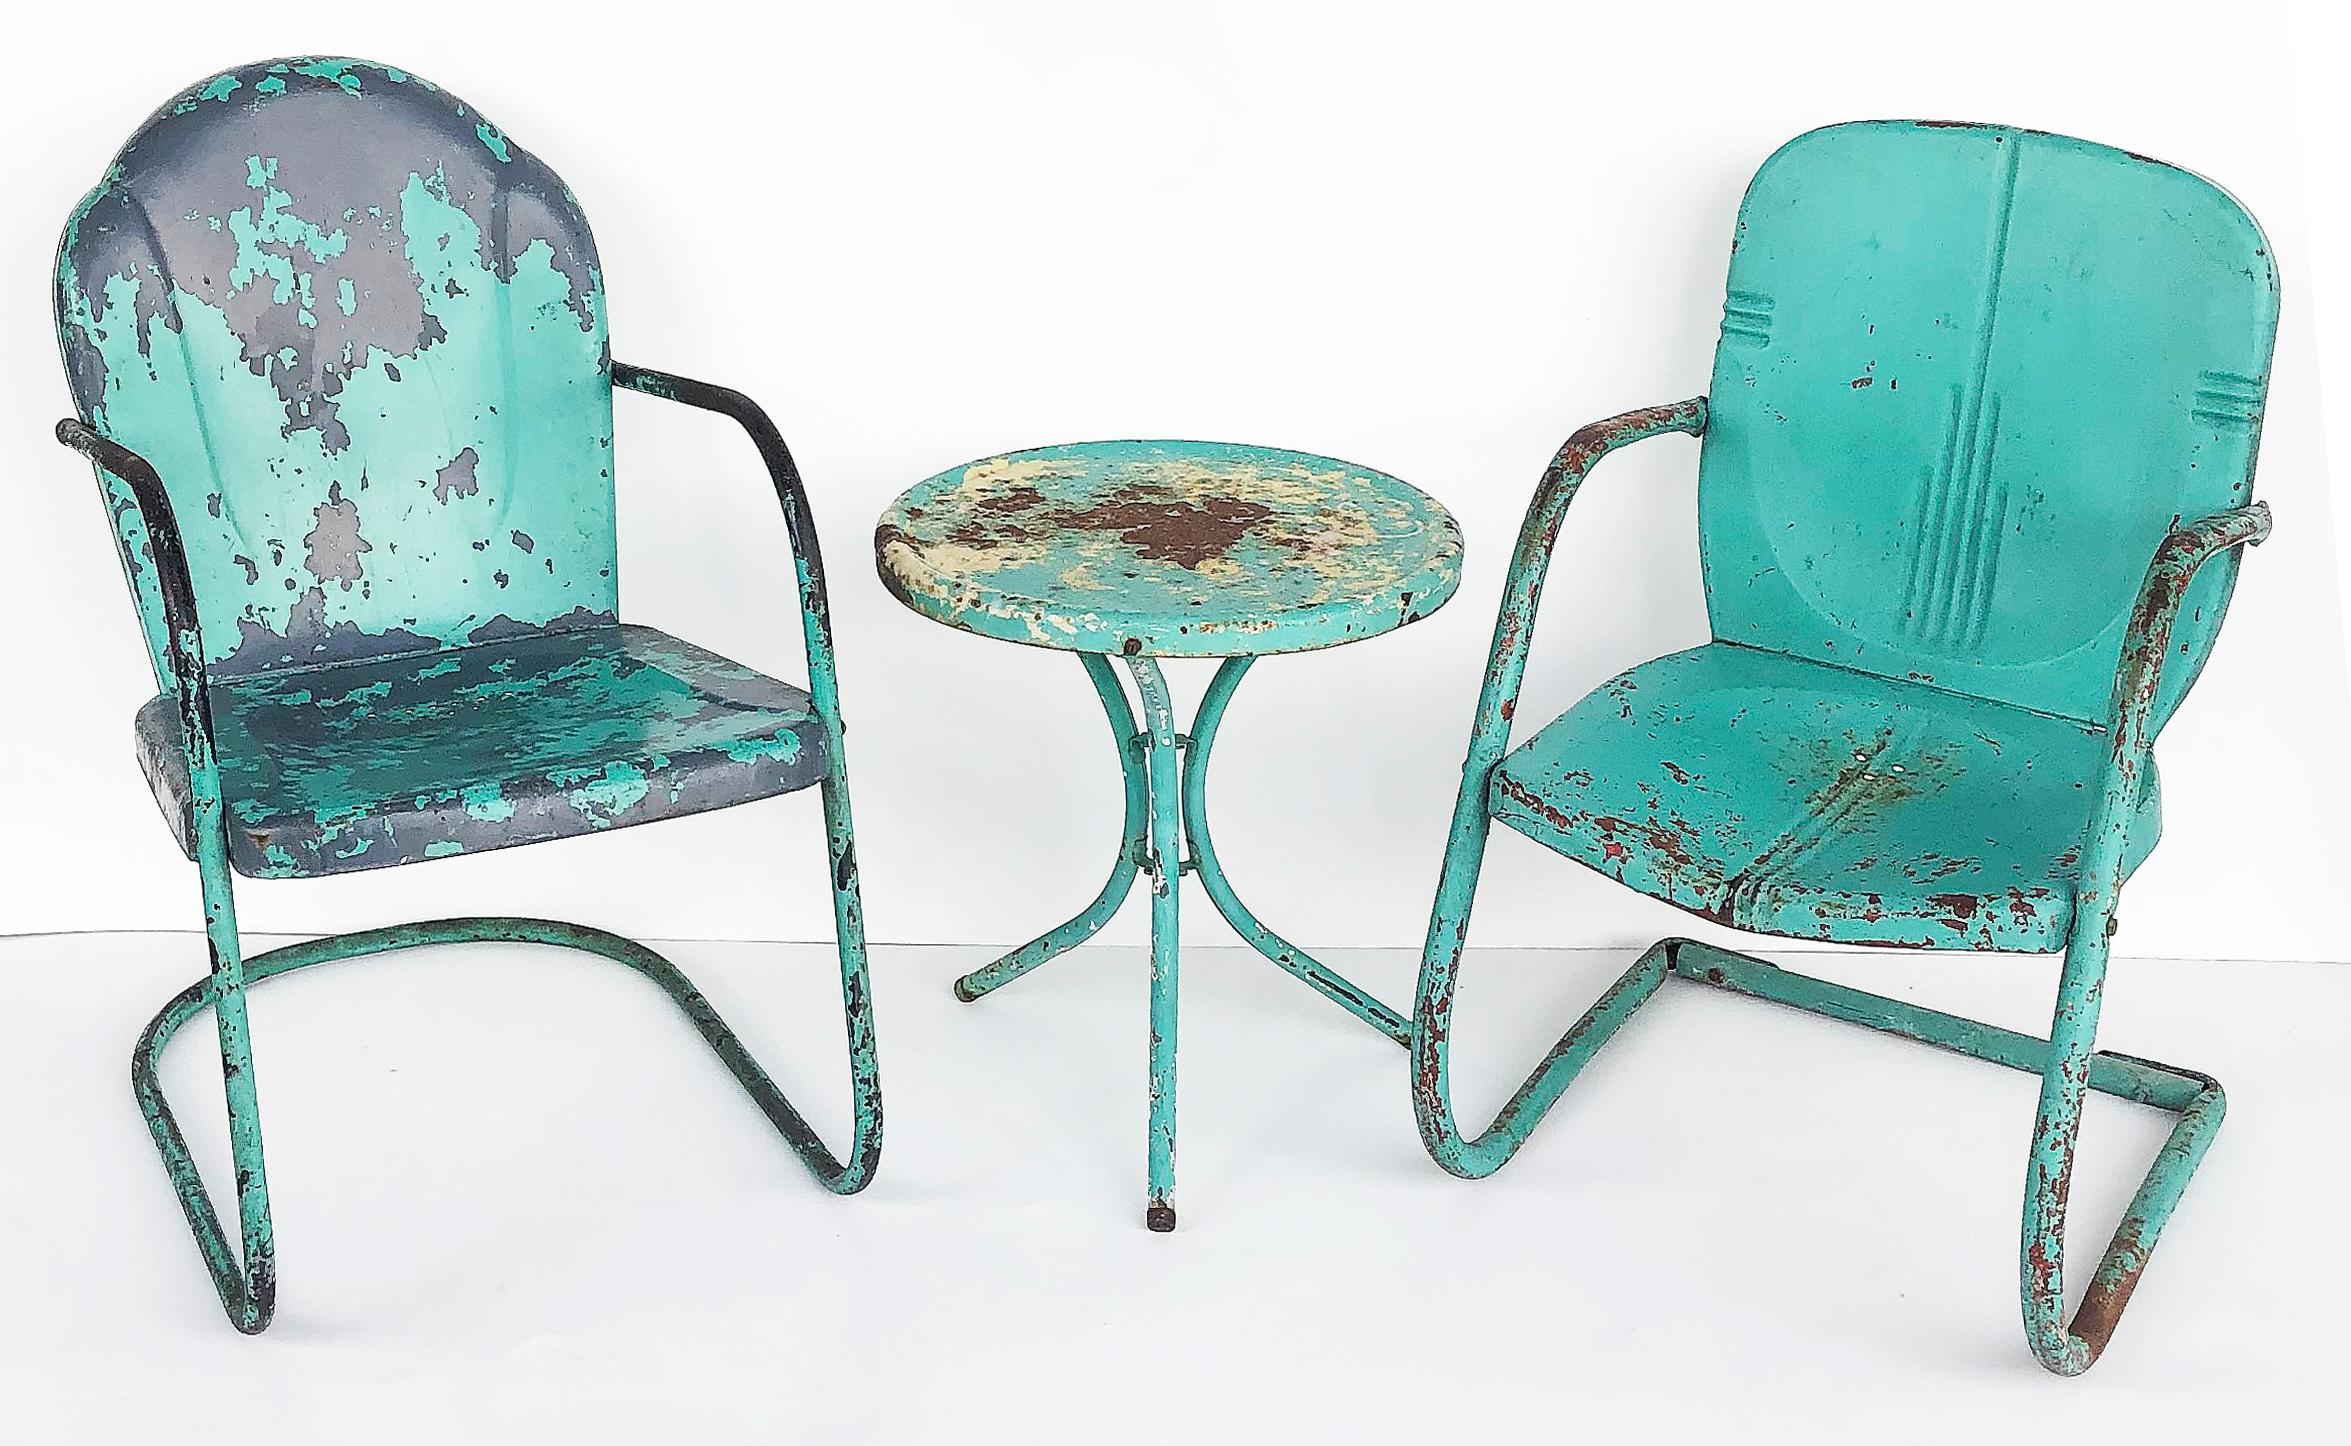 Ensemble de 3 chaises et table de jardin en métal peint Shabby chic

Nous proposons à la vente un ensemble vintage de deux chaises de jardin cantilever en fer similaires et une table d'appoint. Le décor avait été peint en turquoise par-dessus les